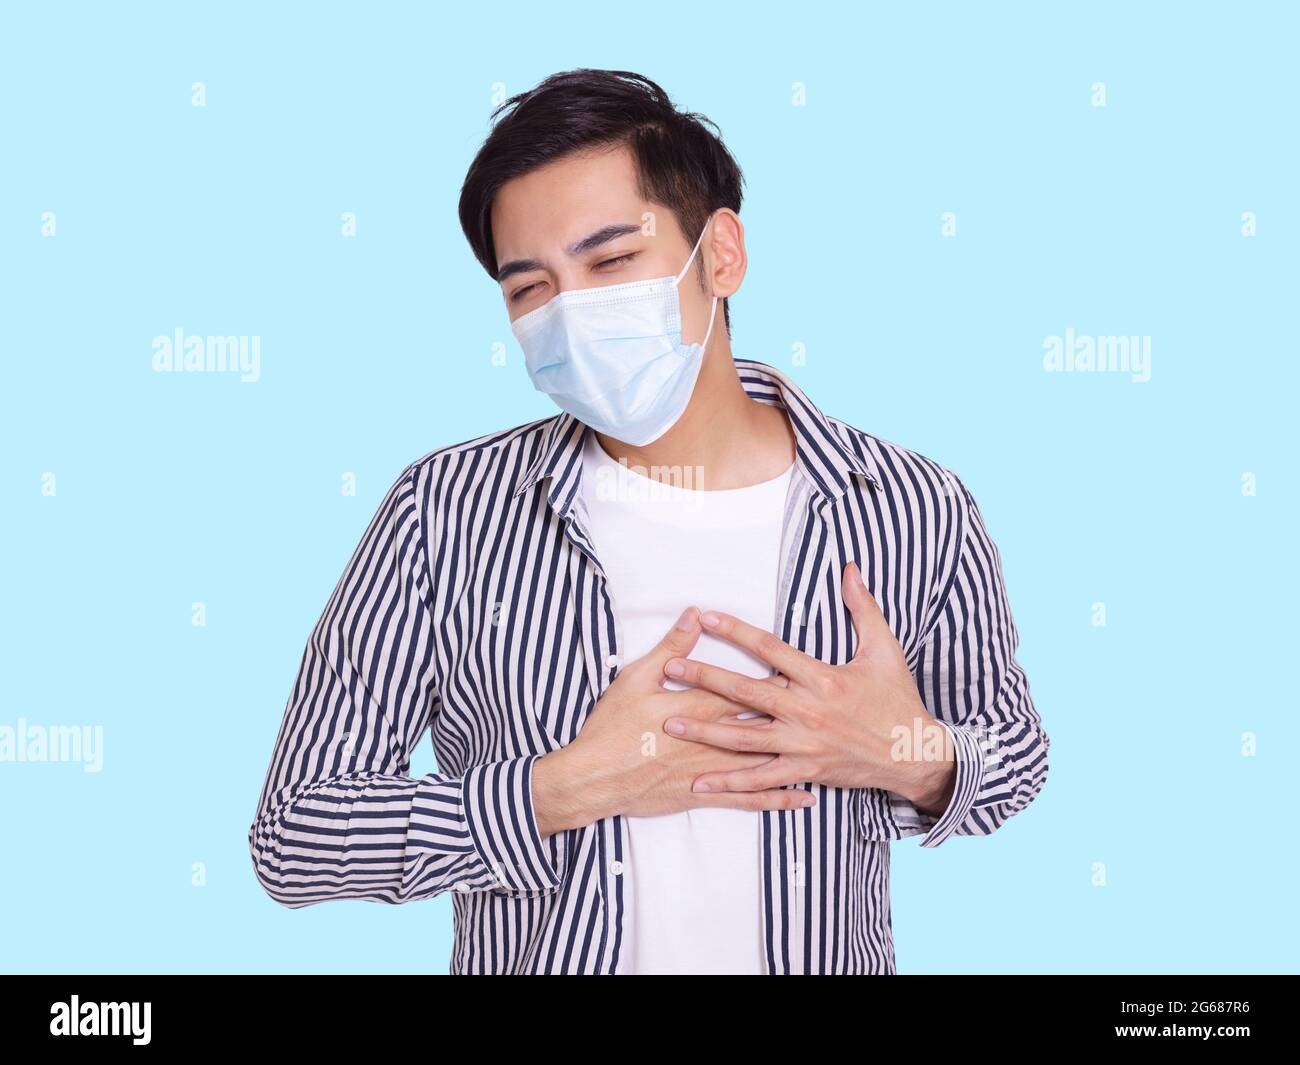 le jeune homme portant un masque médical de protection, se sent mal à l'aise avec ses mains sur sa poitrine, a de la difficulté à respirer. Banque D'Images